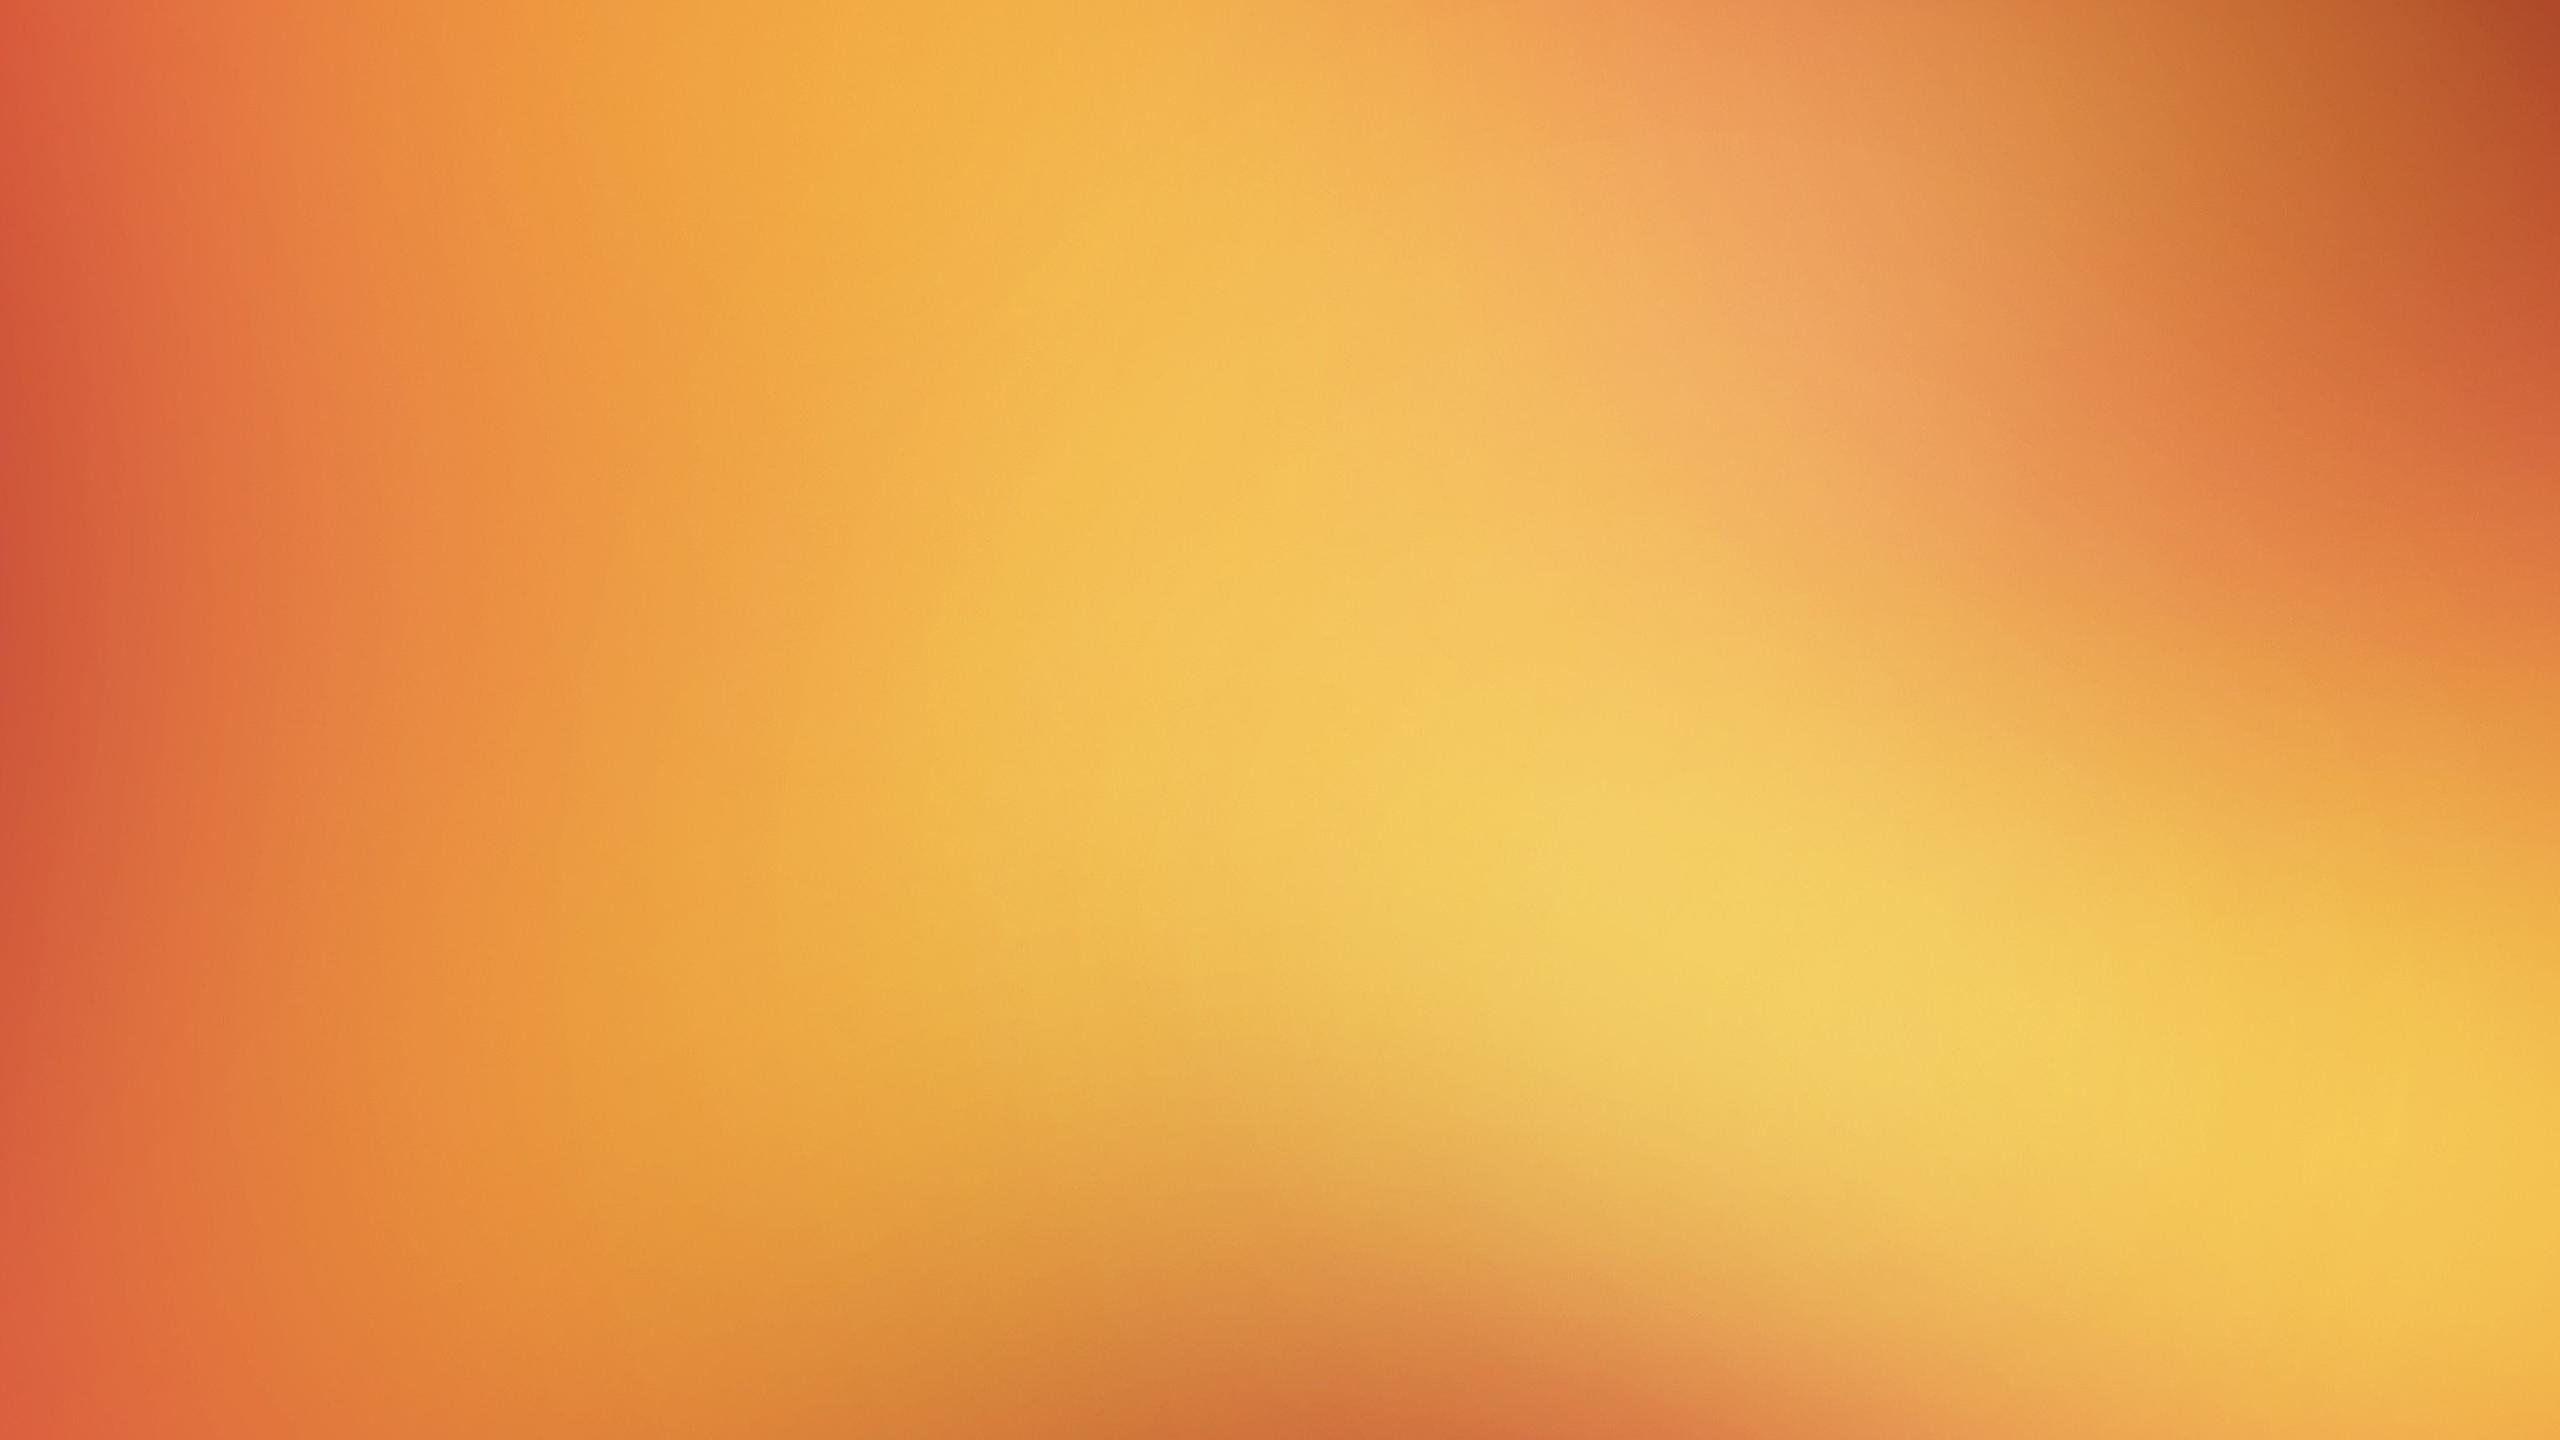 Light Orange Color Background Image